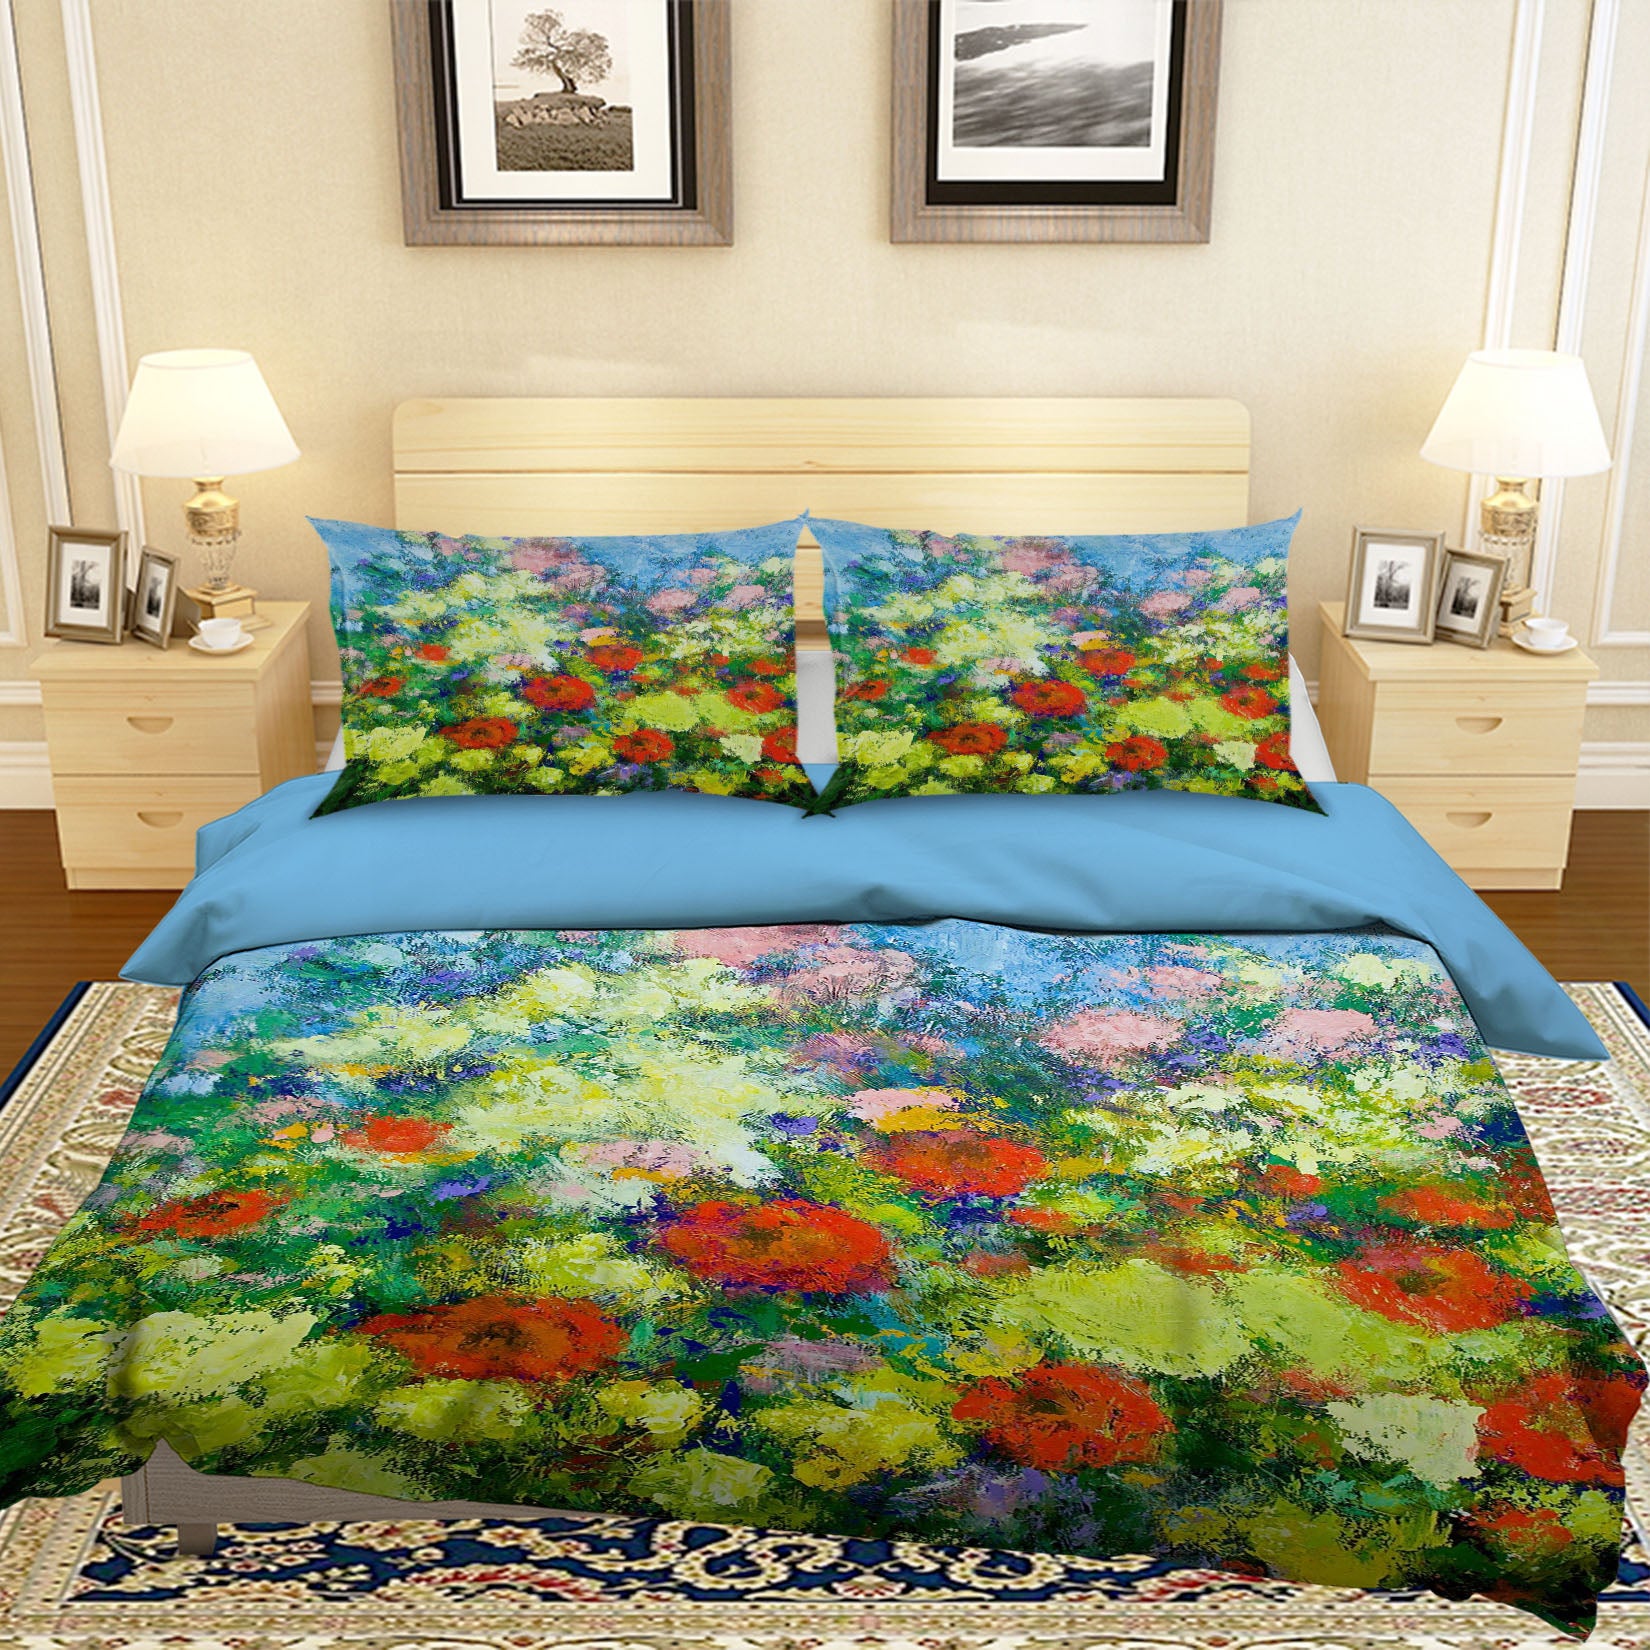 3D Garden Shower 1070 Allan P. Friedlander Bedding Bed Pillowcases Quilt